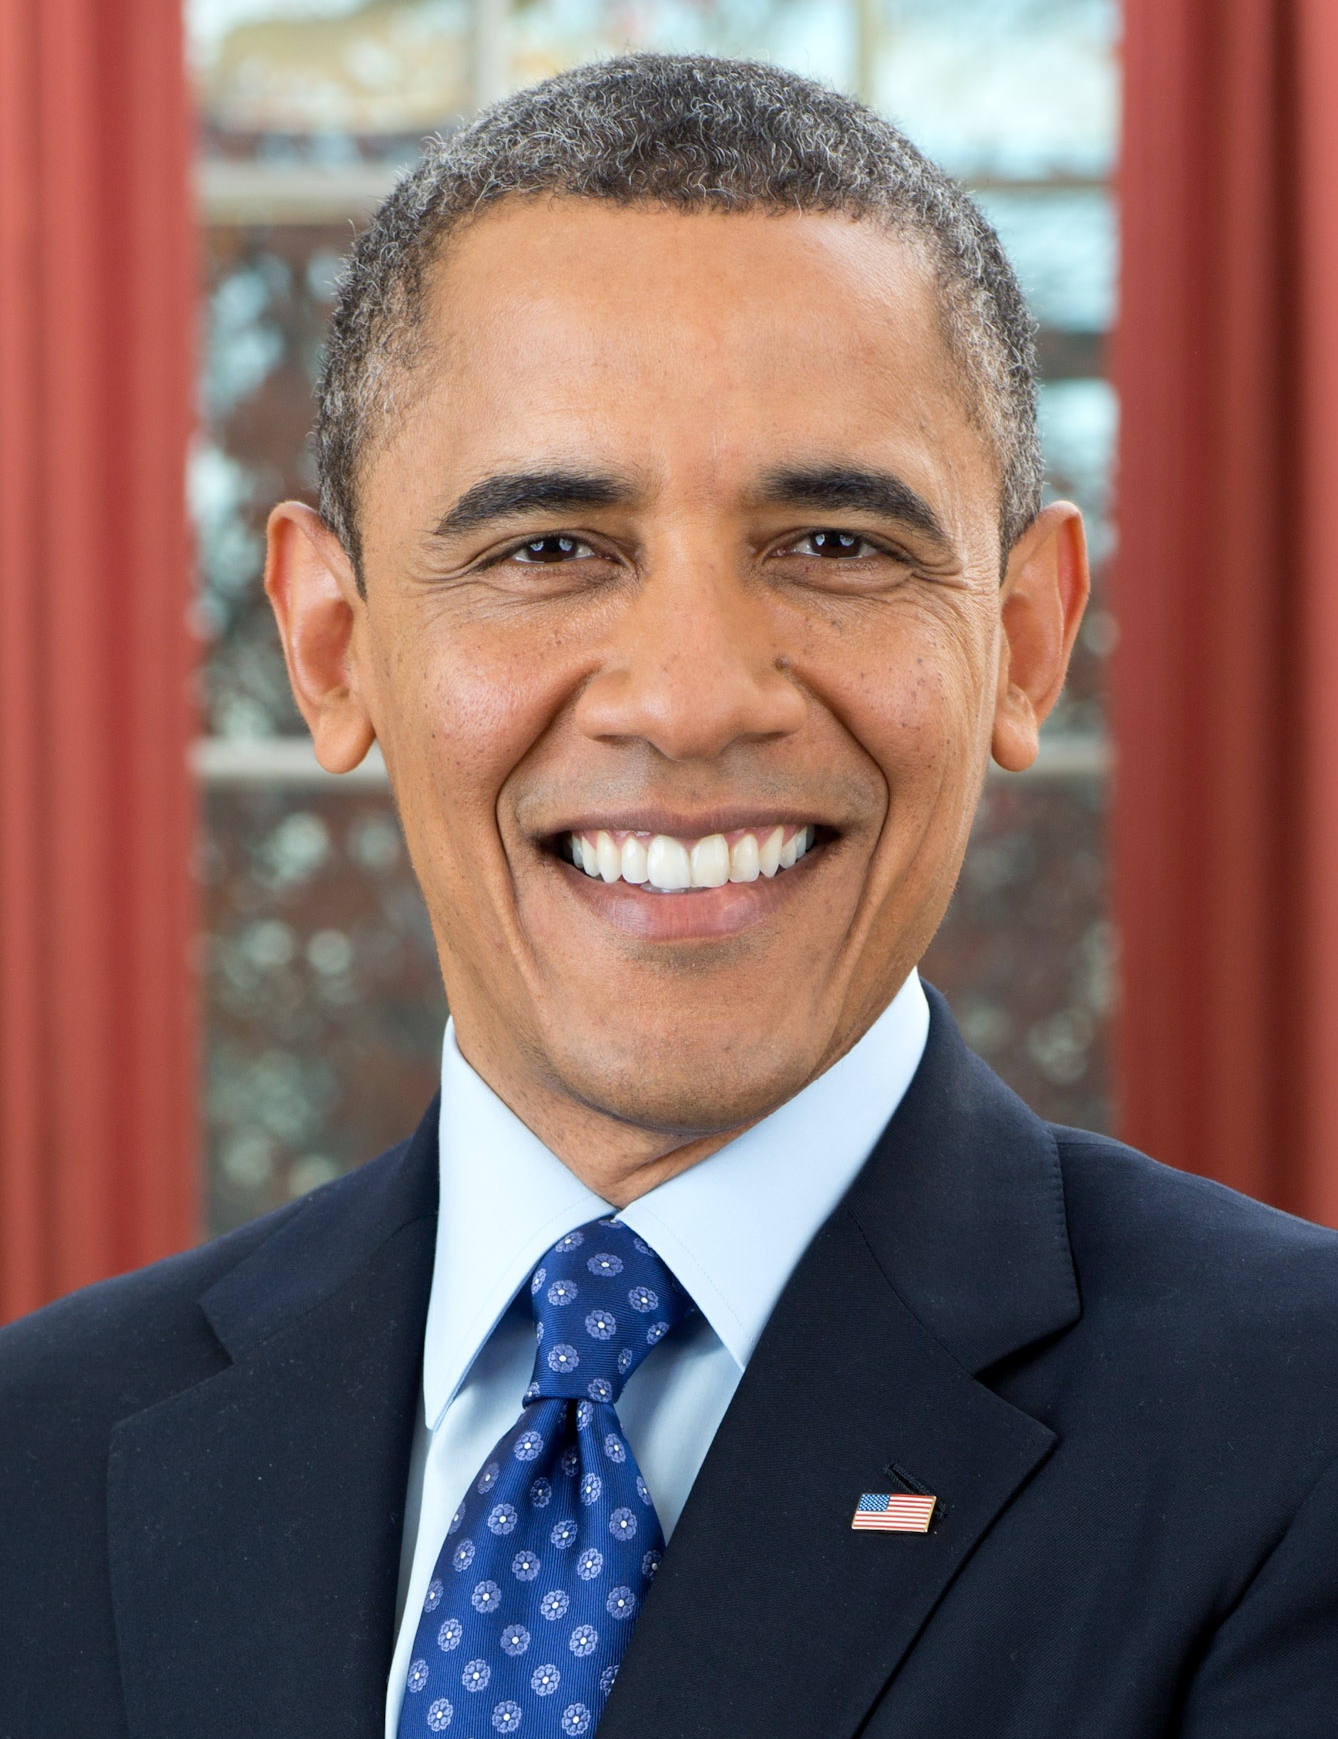 President_Barack_Obama,_2012_portrait_crop.jpg